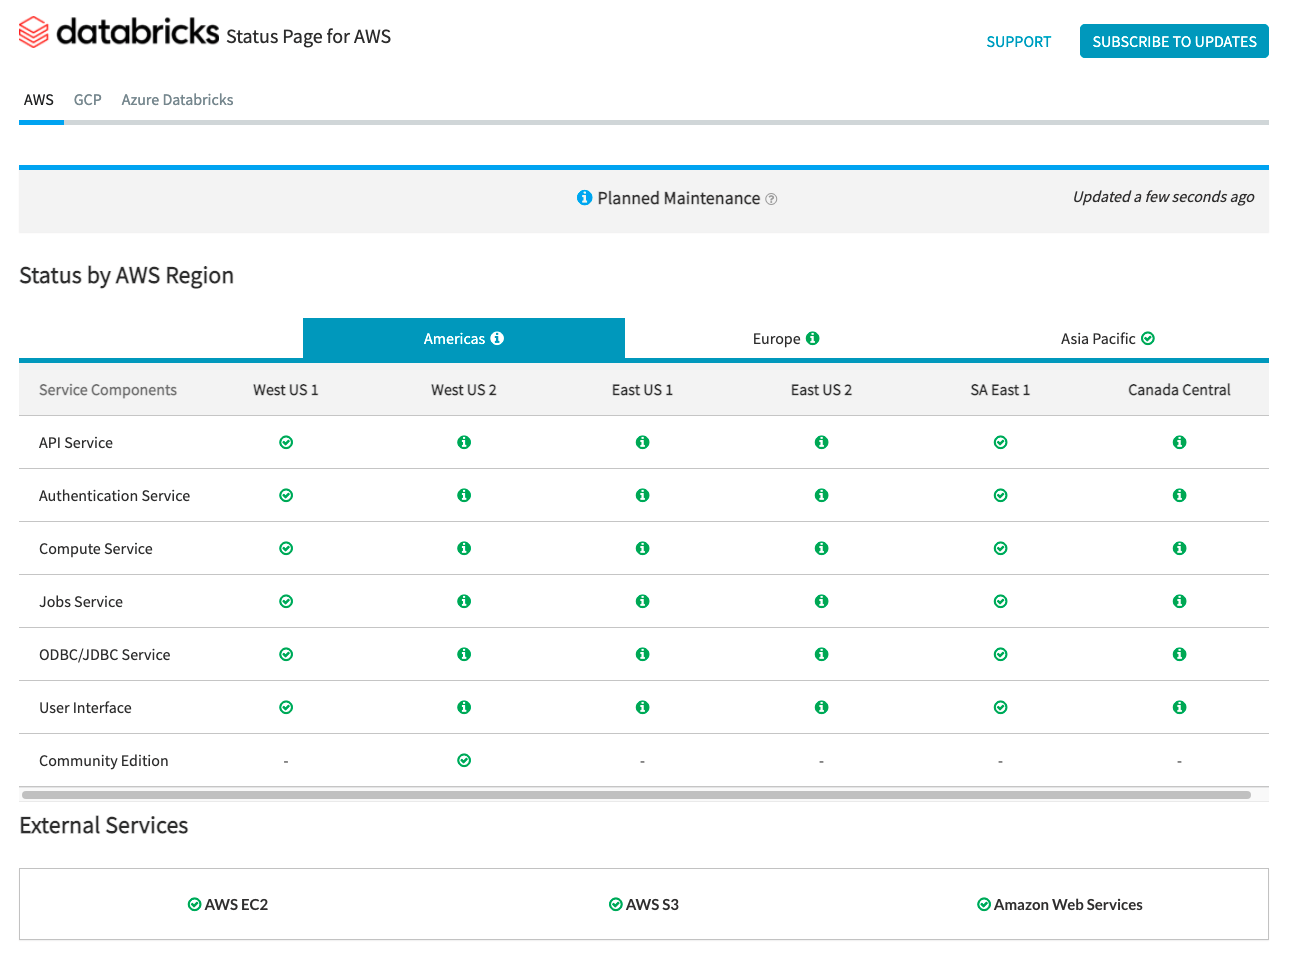 The Databricks Status Page